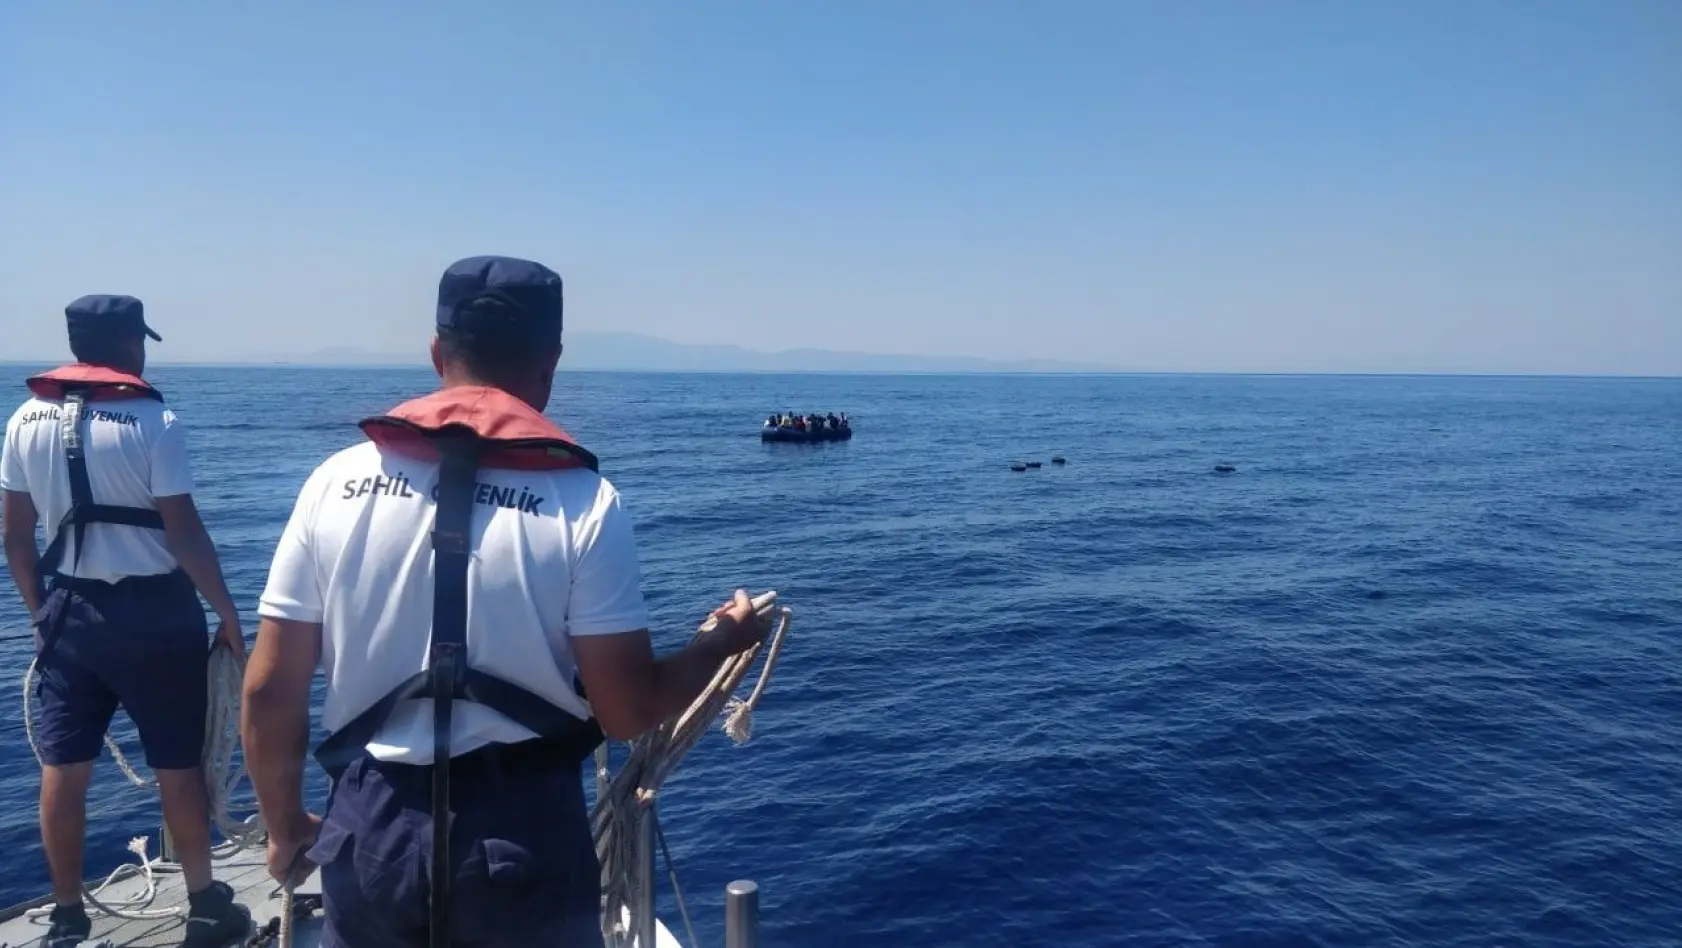 Yunan unsurlarınca geri itilen 46 göçmen kurtarıldı